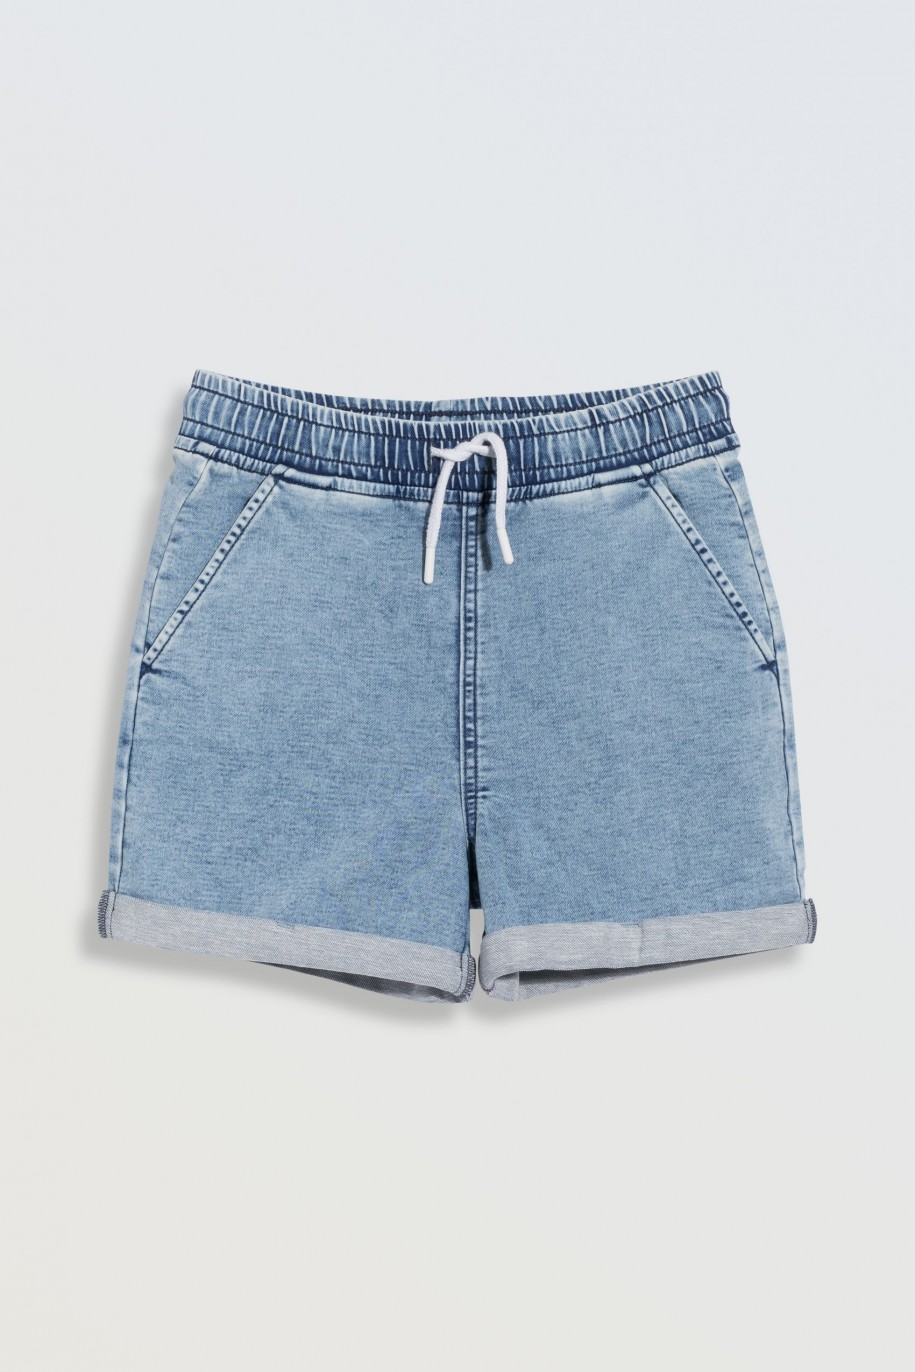 Jasnoniebieskie krótkie spodenki jeansowe z wywijanymi nogawkami - 46786